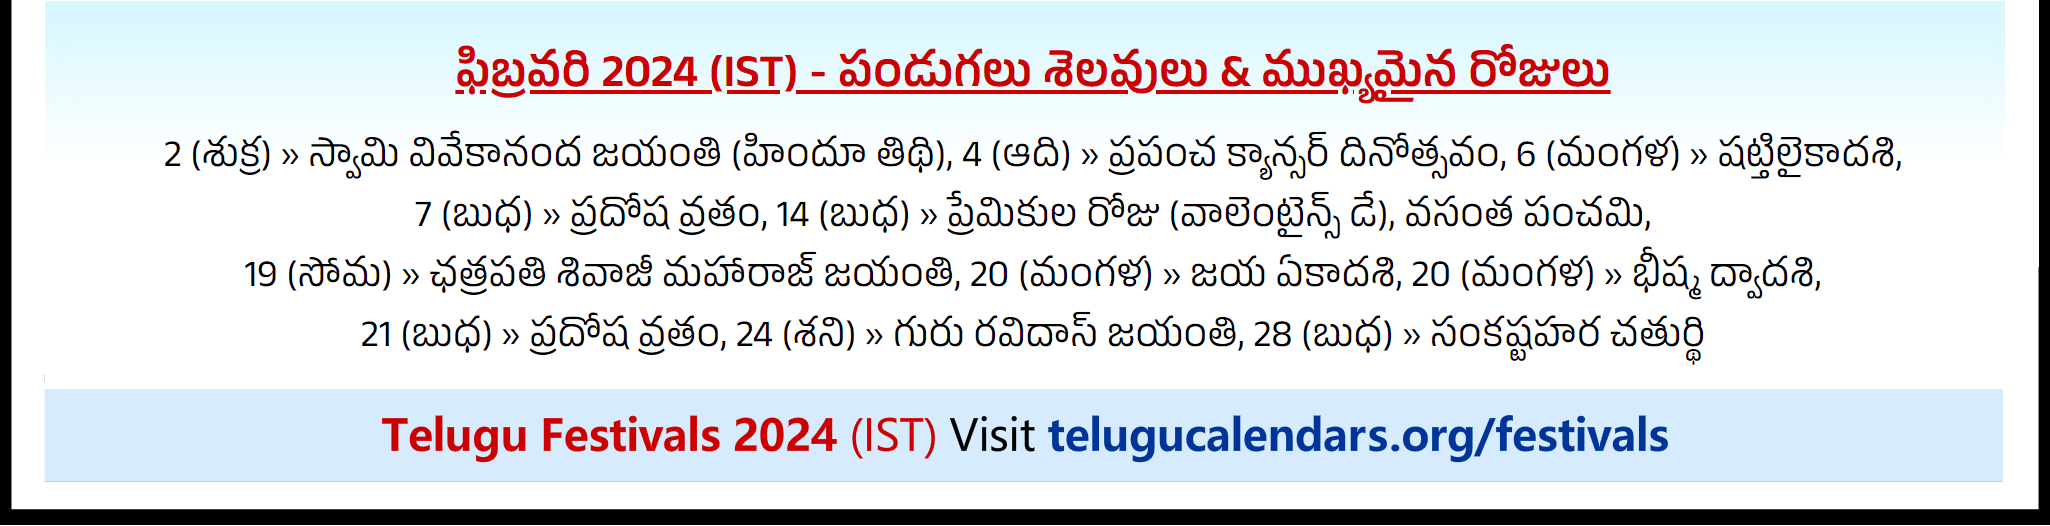 Telugu Festivals 2024 February Andhra Pradesh